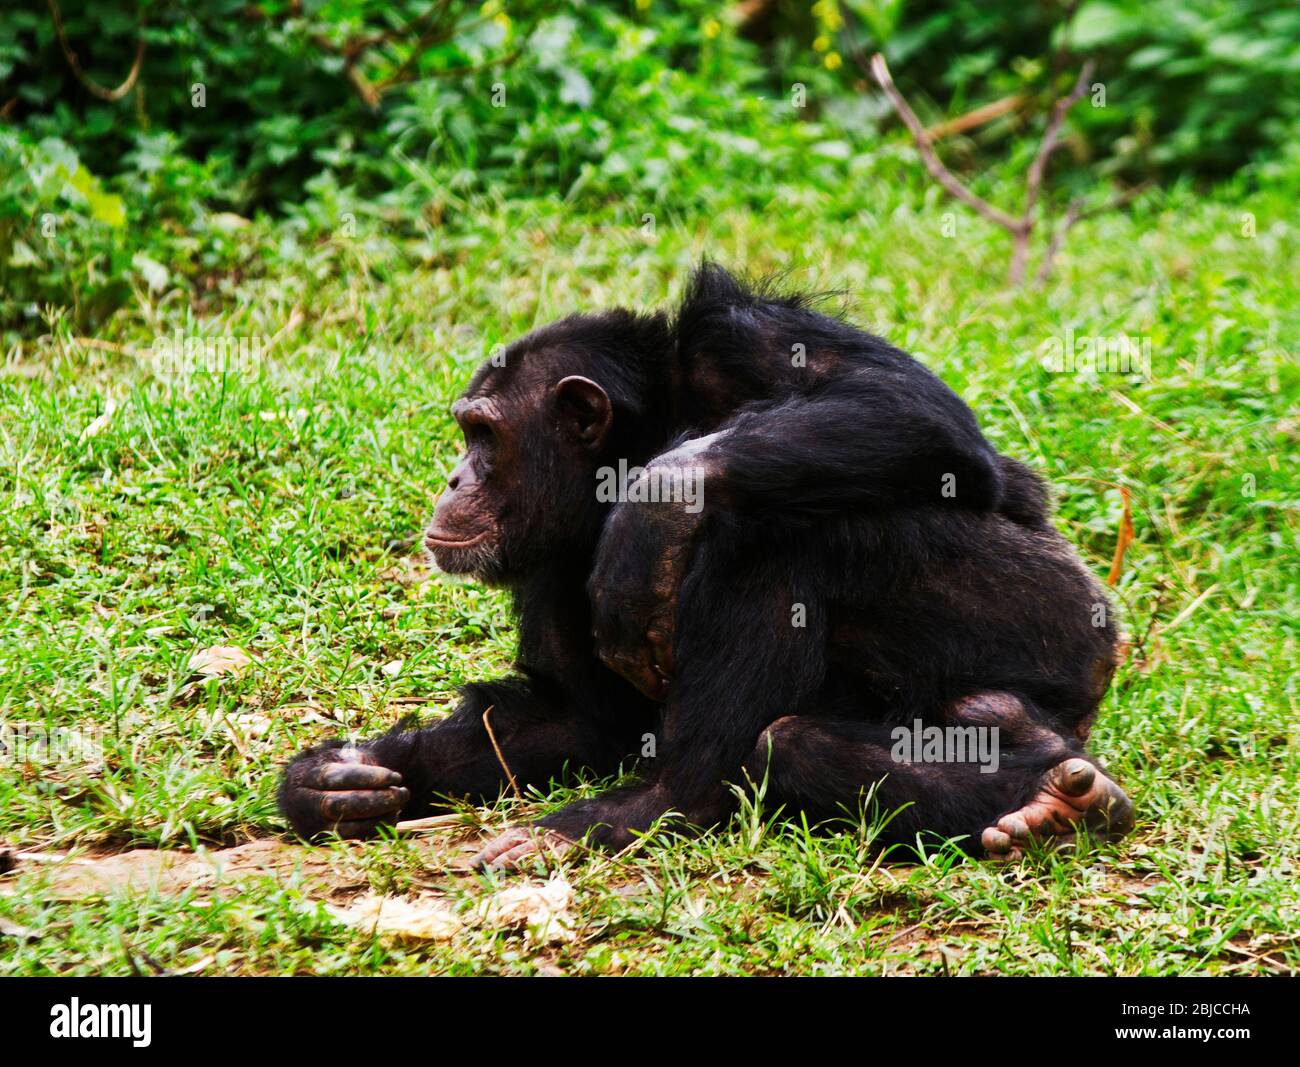 Ein reifer Rüde Chimpanzee entspannt sich während einer Siesta während der Hitze des Tages. Männchen sind immer wachsam und bereit, die Weibchen und Jungen zu schützen Stockfoto